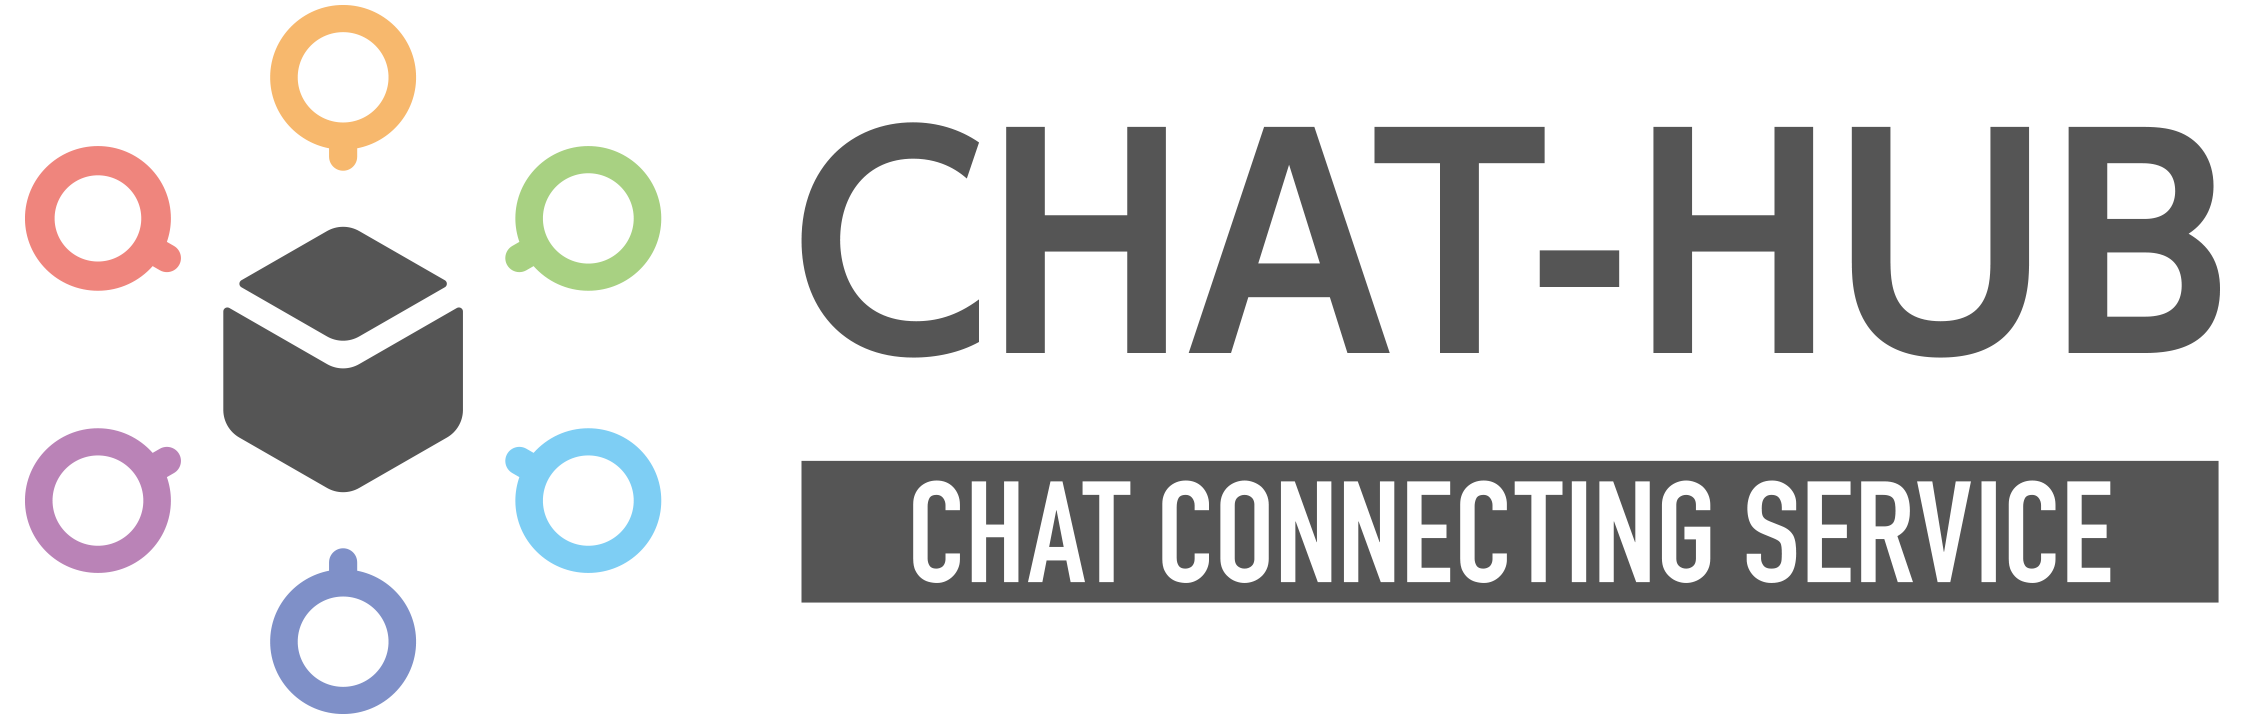 ビジネスチャットを一元管理可能な「CHAT-HUB」ロゴ